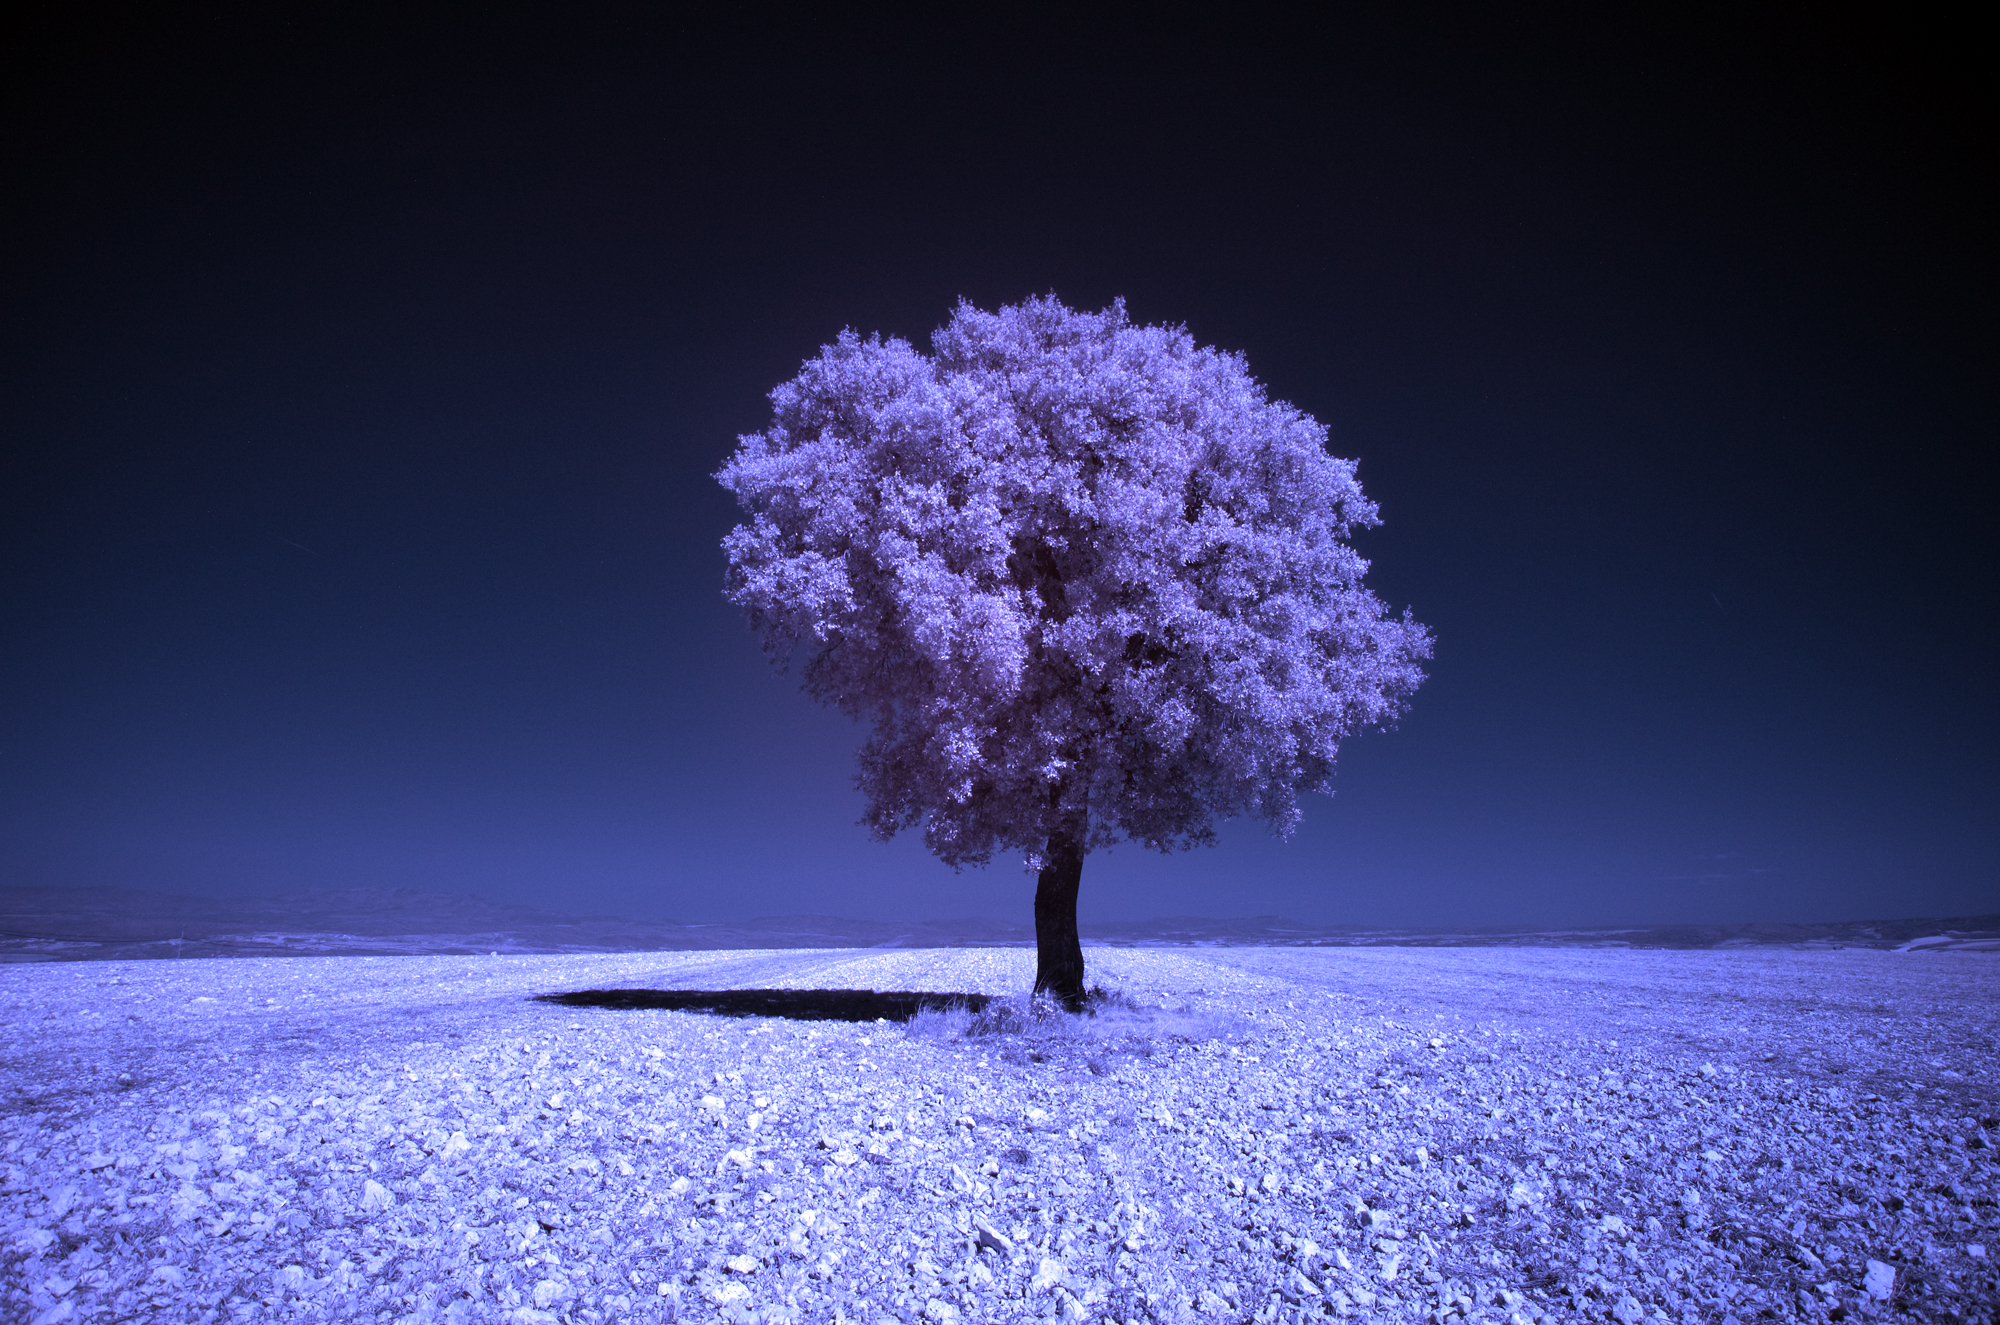 Как превратить пейзажное фото в сюрреалистическое инфракрасное изображение - 5a